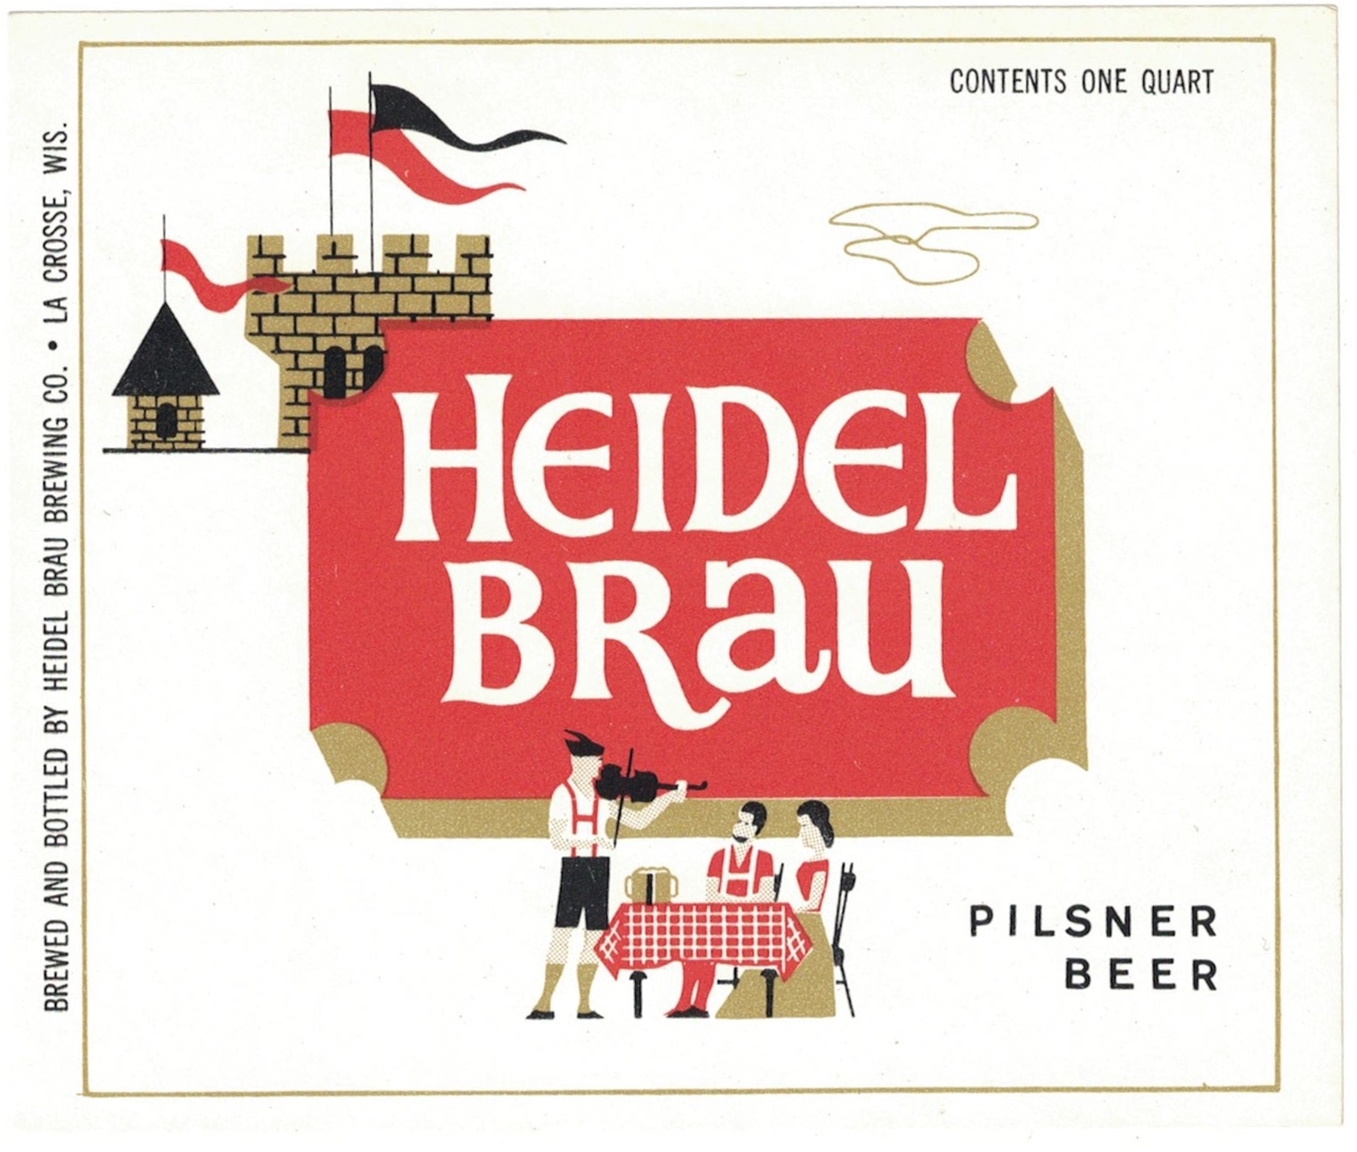 Heidel Brau Pilsner Beer Label